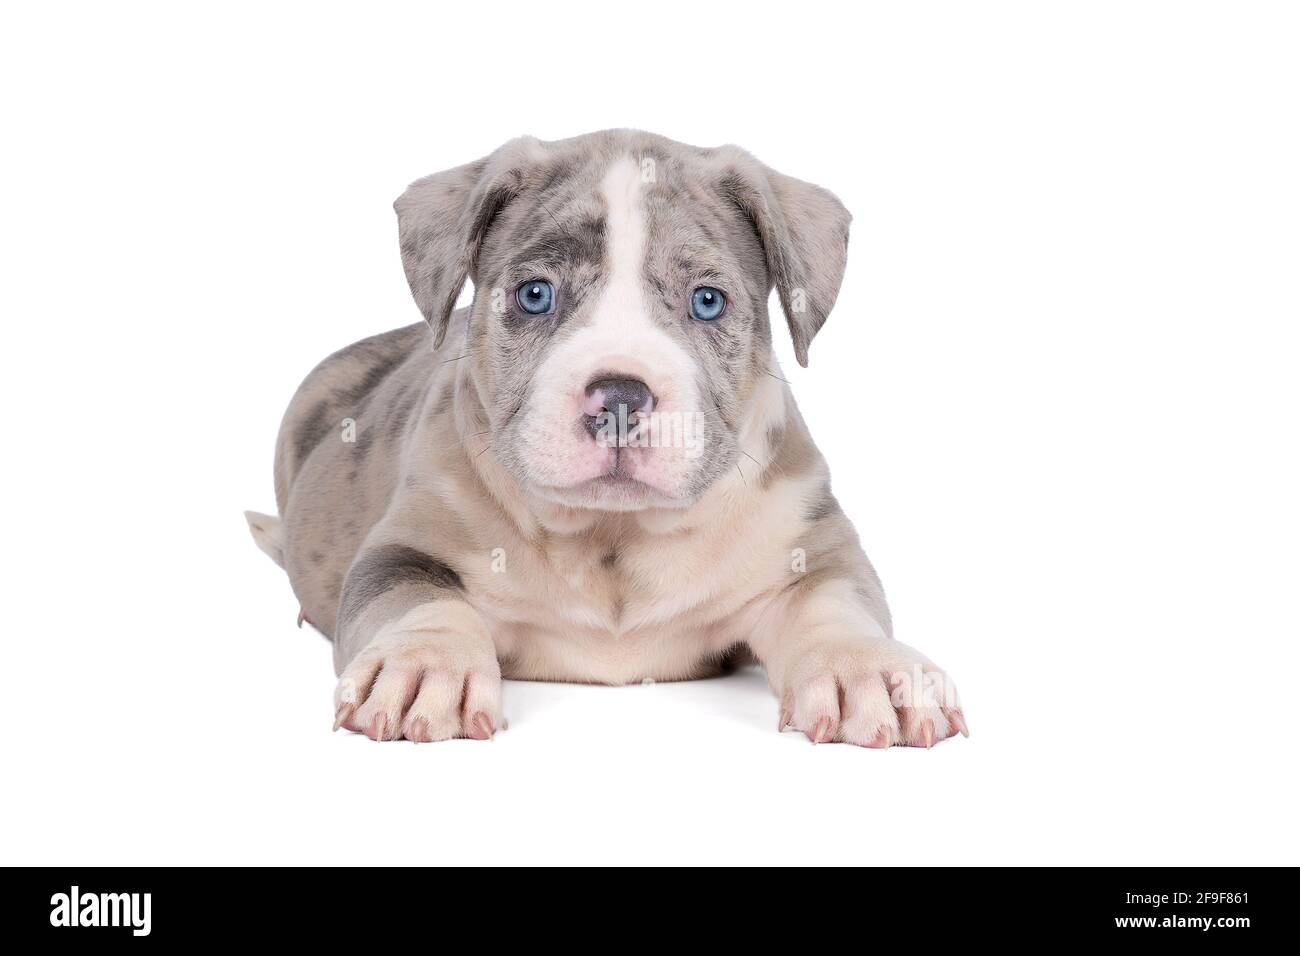 Un pup américain de Bully ou de Bulldog de race pure, avec des fourrures bleues et blanches, isolé sur un fond blanc Banque D'Images